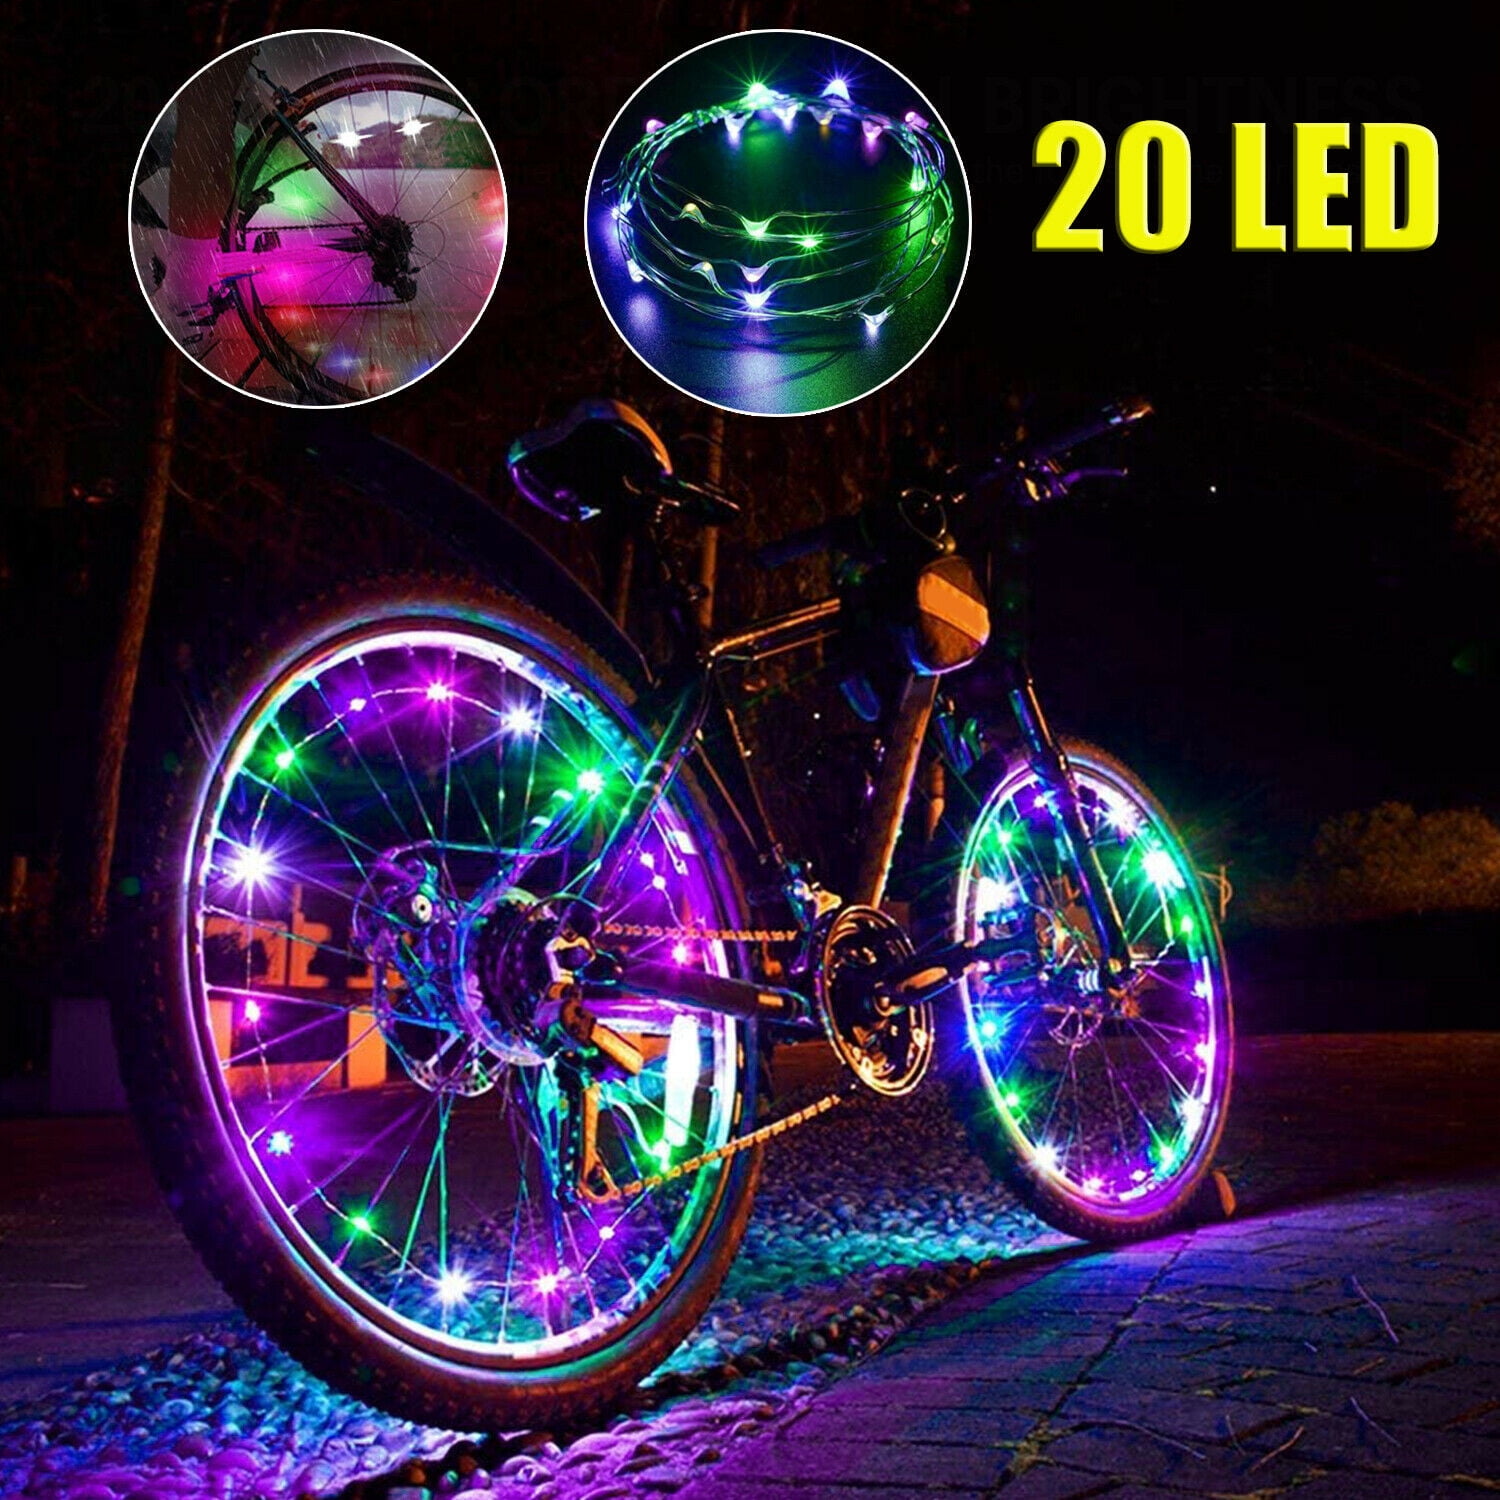 Led Bike Wheel Lights -Waterproof Bright Light Strip (2M), Safety Lights, Cool Kids Accessories, Light Up Lightweight - Walmart.com